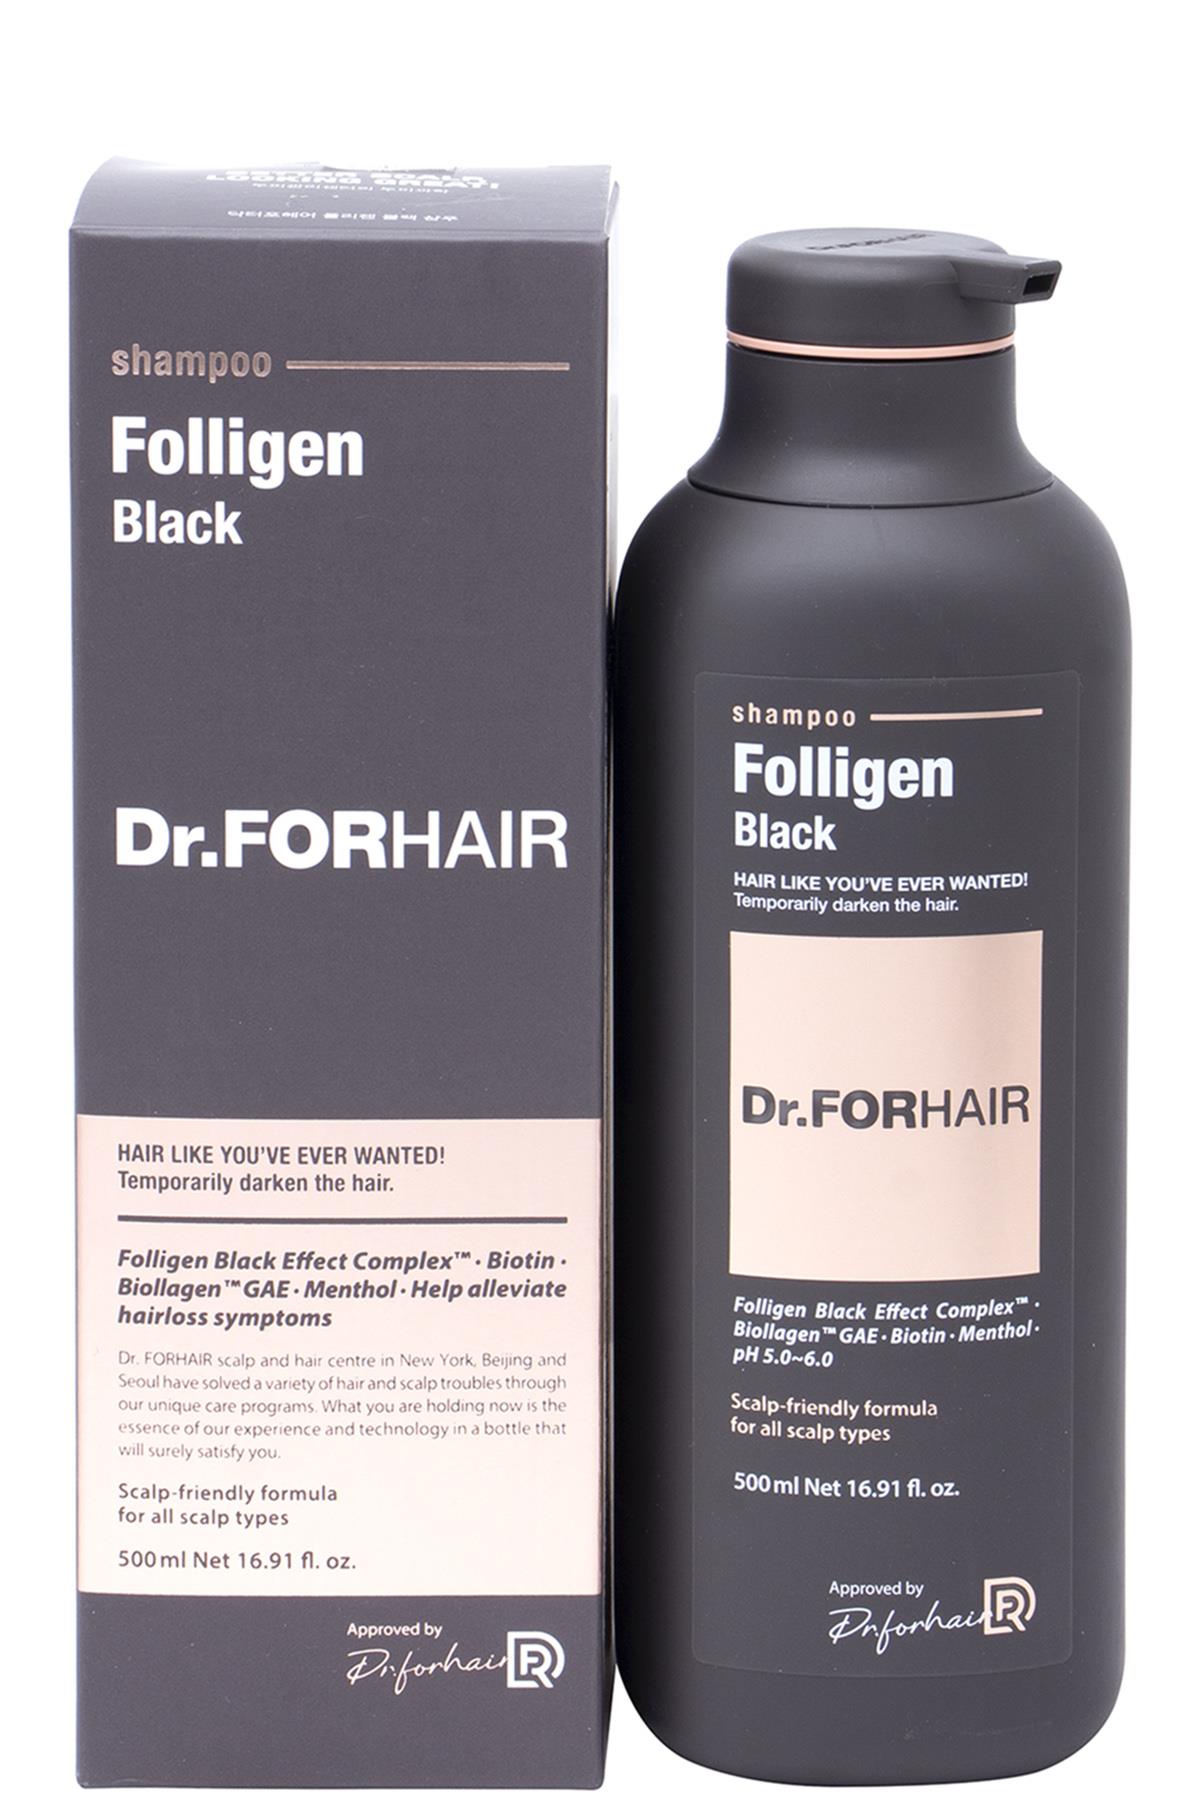 DR FORHAIR FOLLIGEN BLACK SHAMPOO